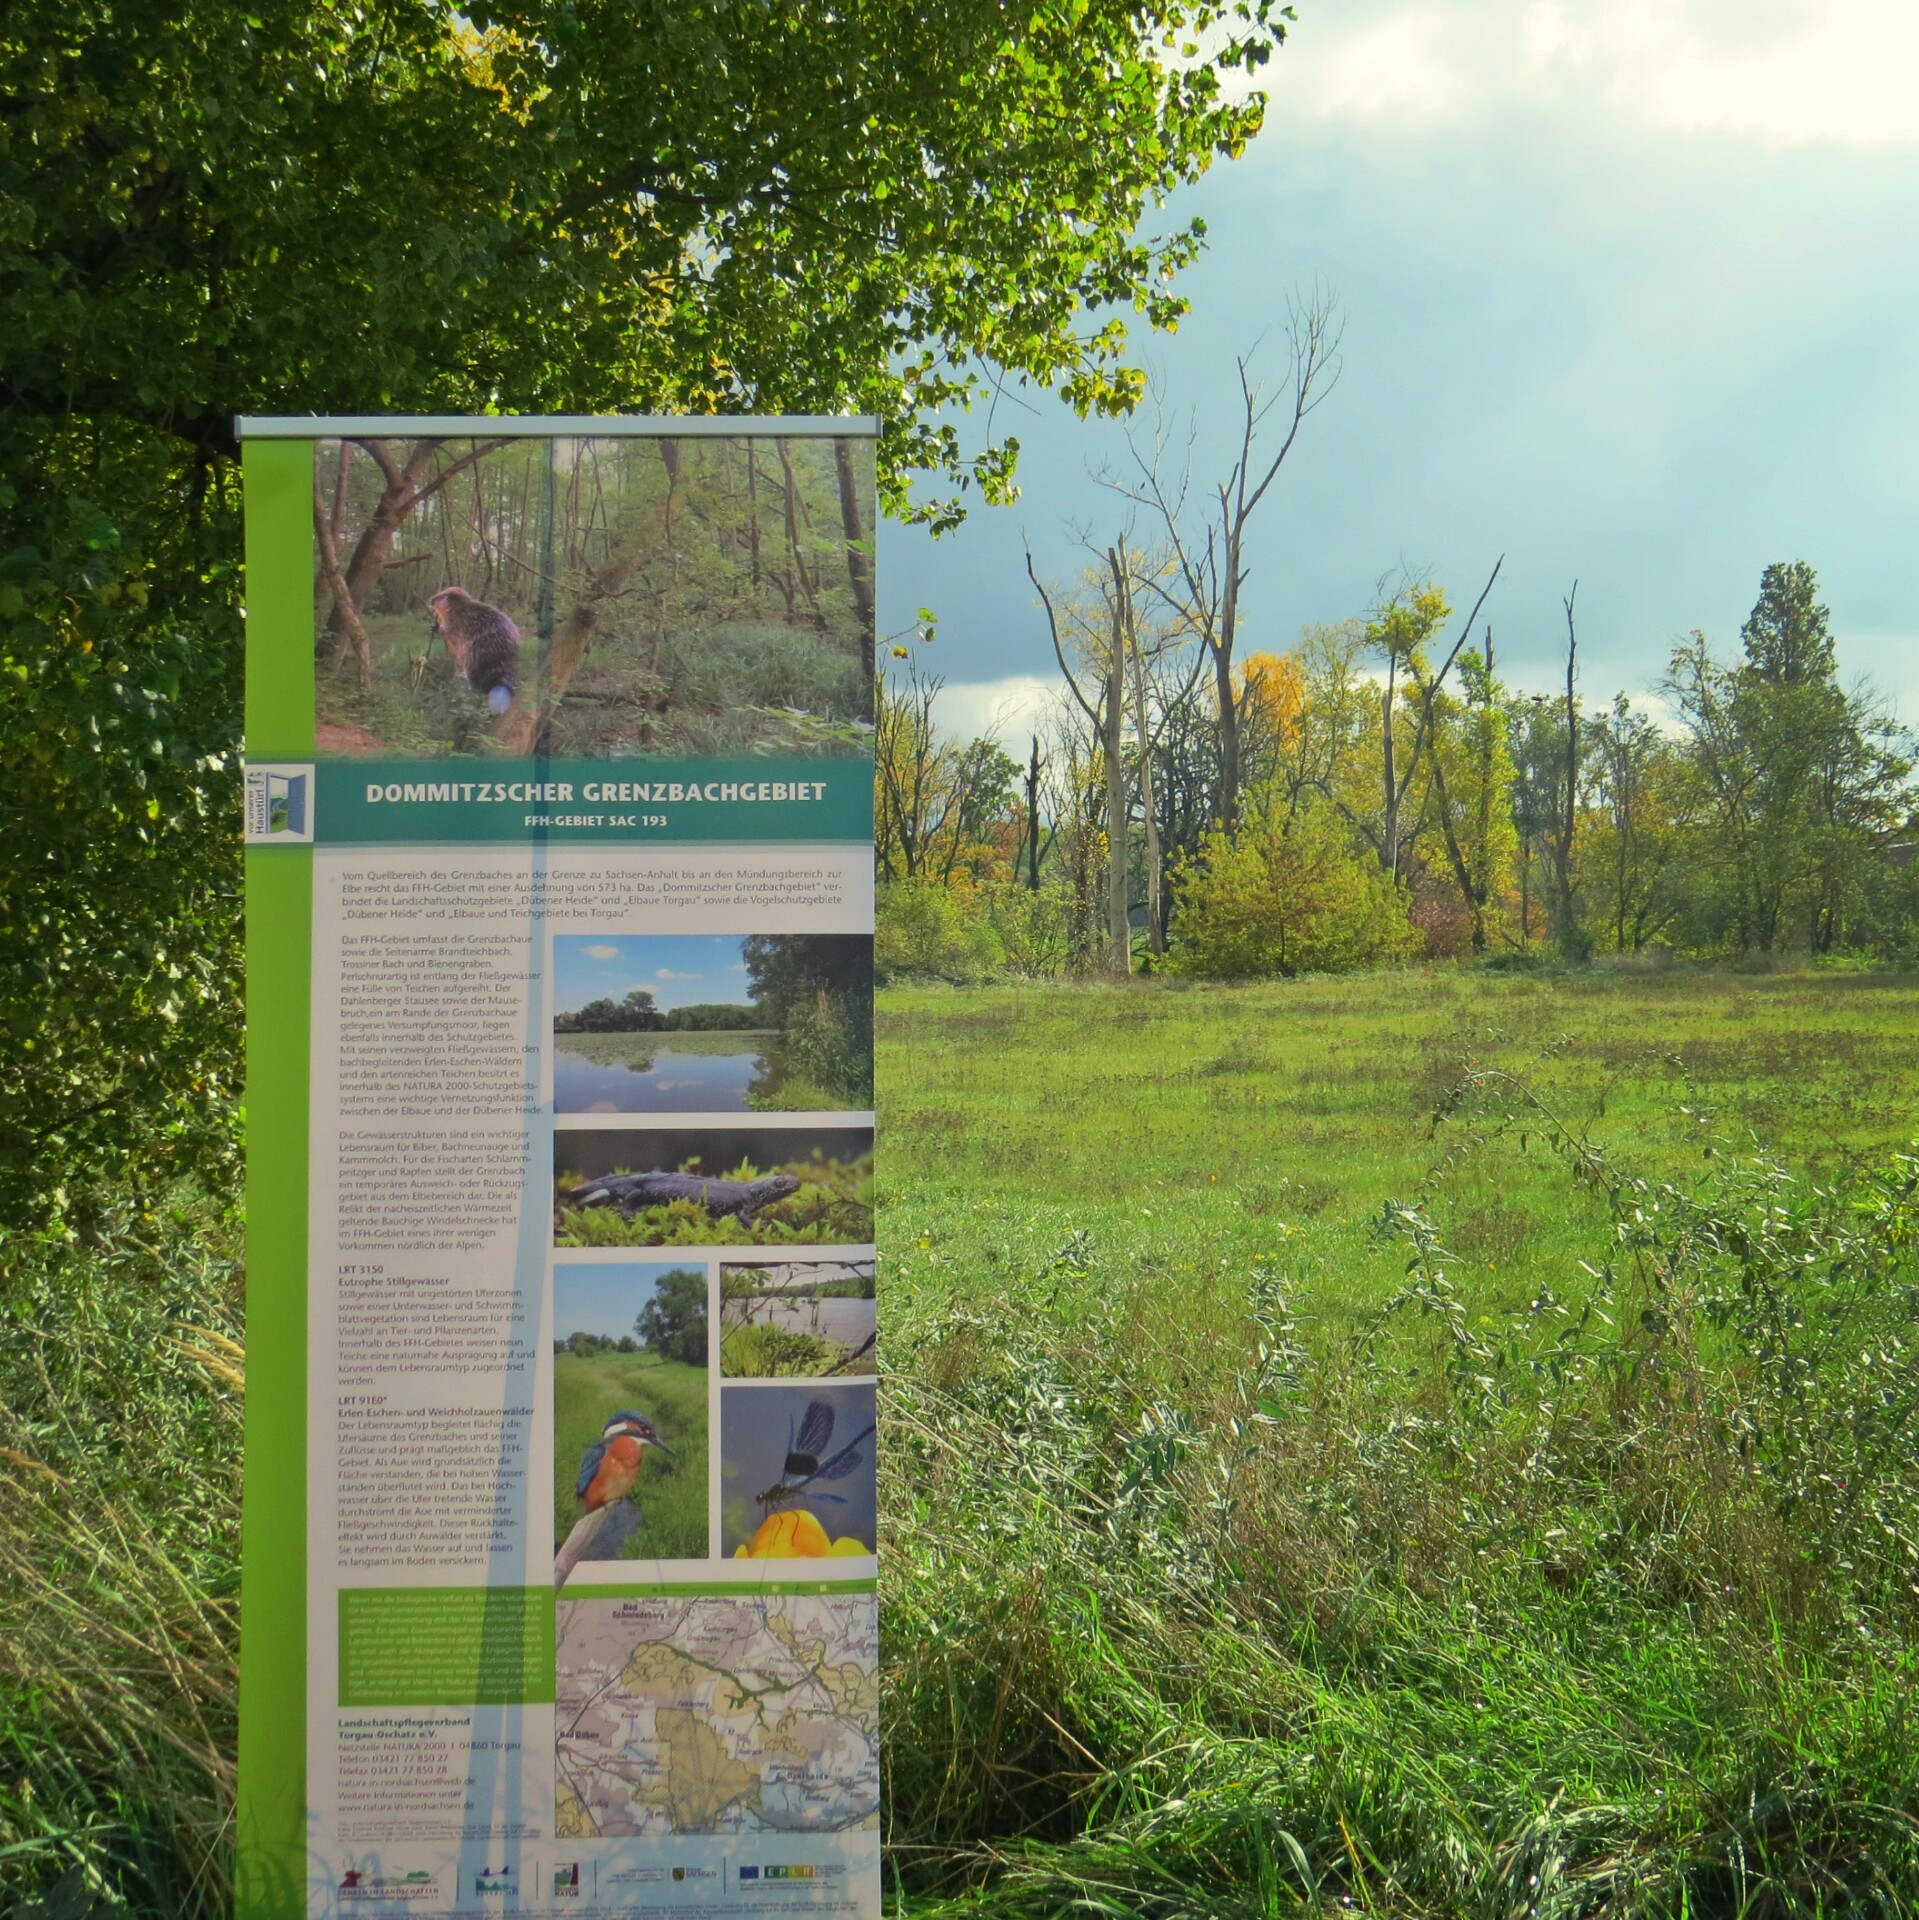 das FFH-Gebiet Dommitzscher Grenzbchgebiet ist Teil der Natura 2000-Schutzgebietskulisse